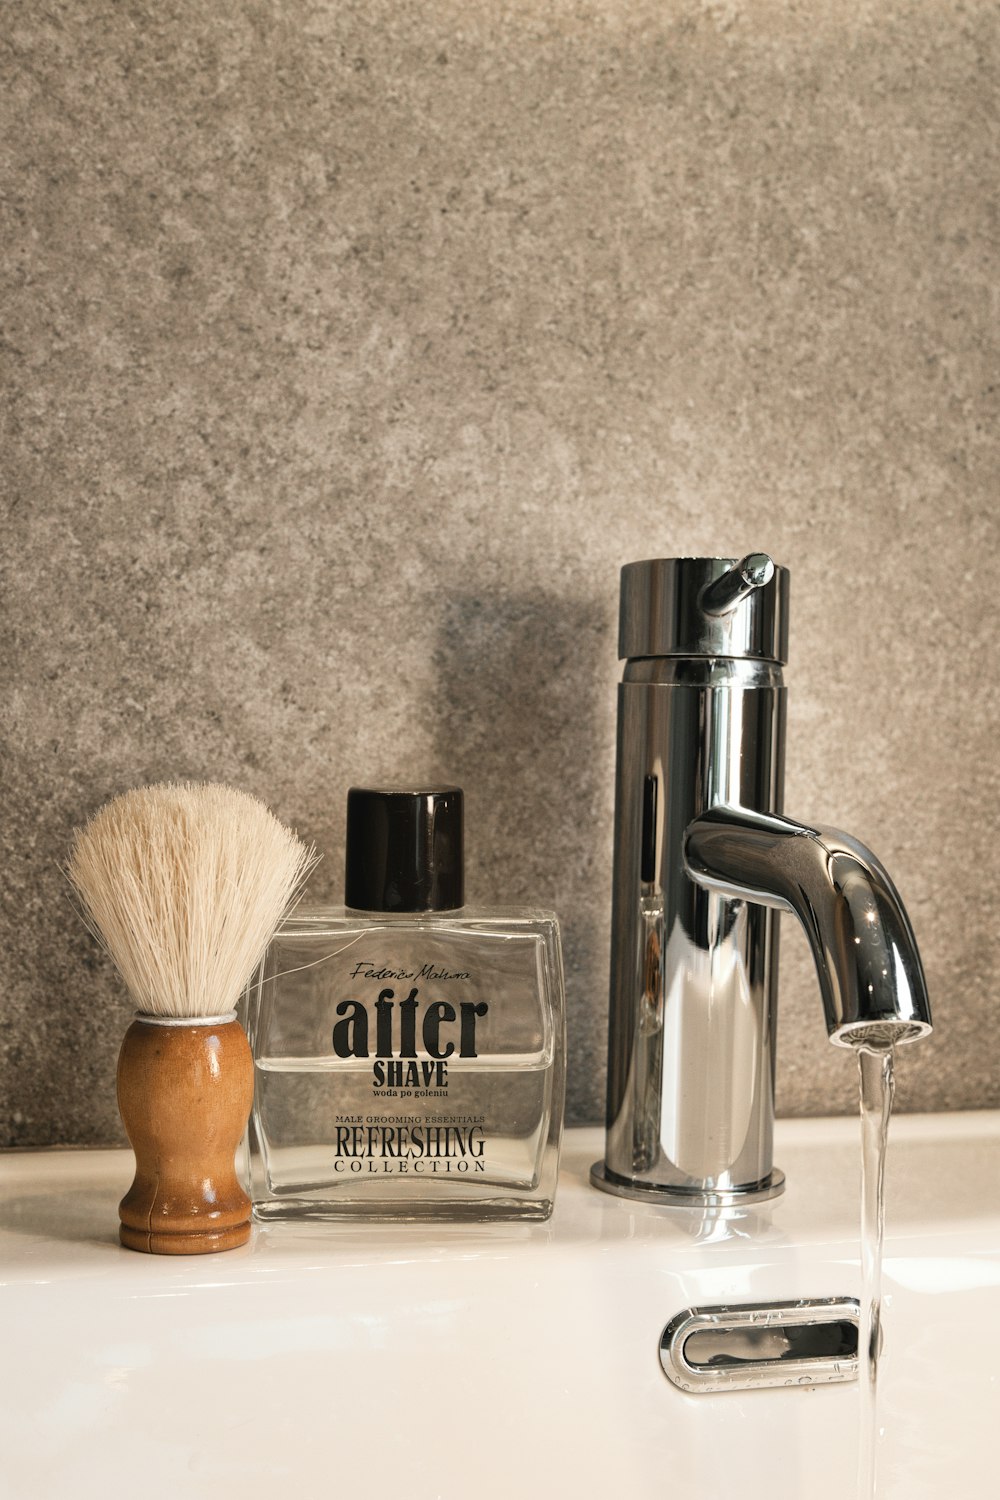 a shaving brush, soap dispenser, and soap dispense